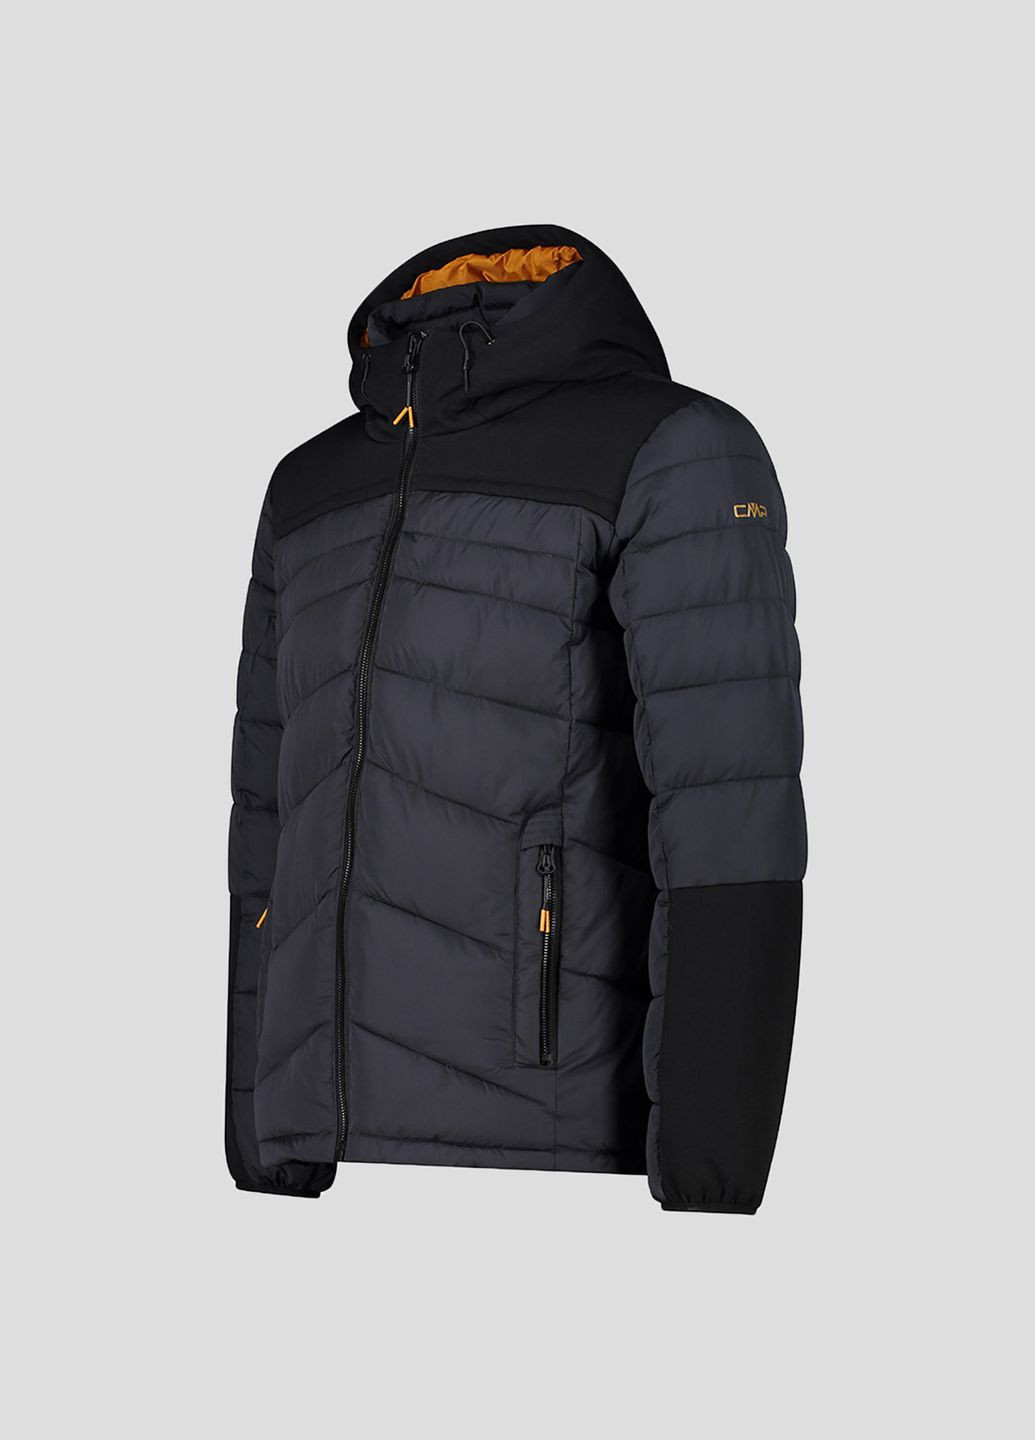 Черная зимняя мужская черная куртка на синтепоне man jacket fix hood CMP